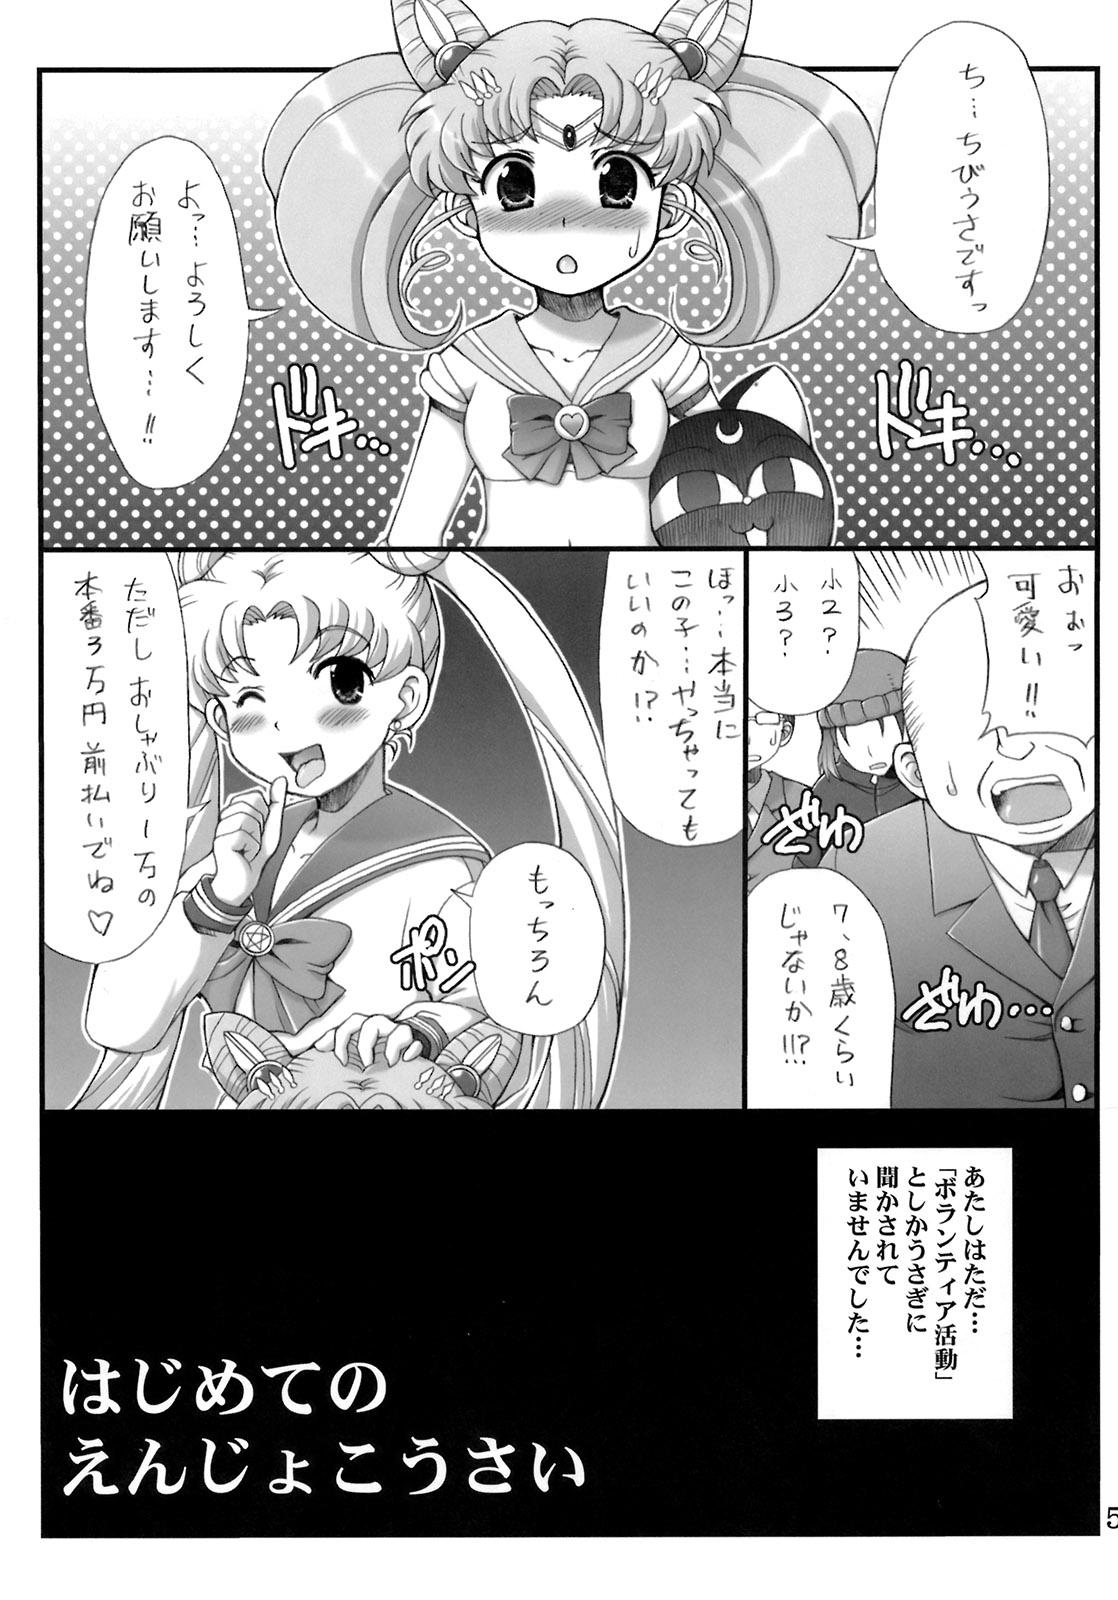 Erotica Lovely Battle Suit HALF & HALF - Sailor moon Sakura taisen Vecina - Page 4